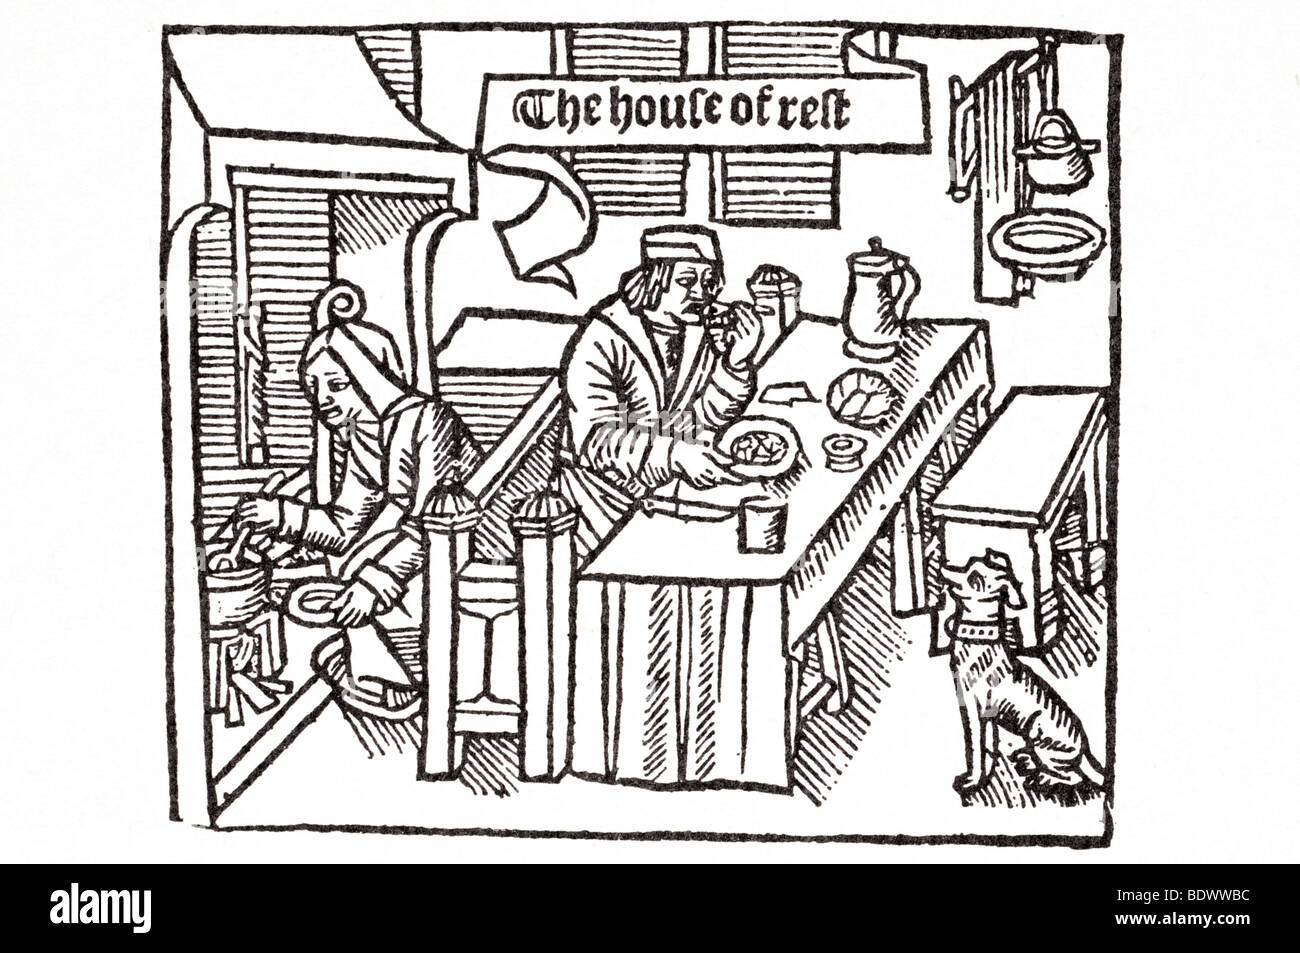 W de worde 1510 gringore pierre castello di labore una donna la piegatura su un fuoco posto un uomo seduto su un sette a mangiare una scheda lunga Foto Stock